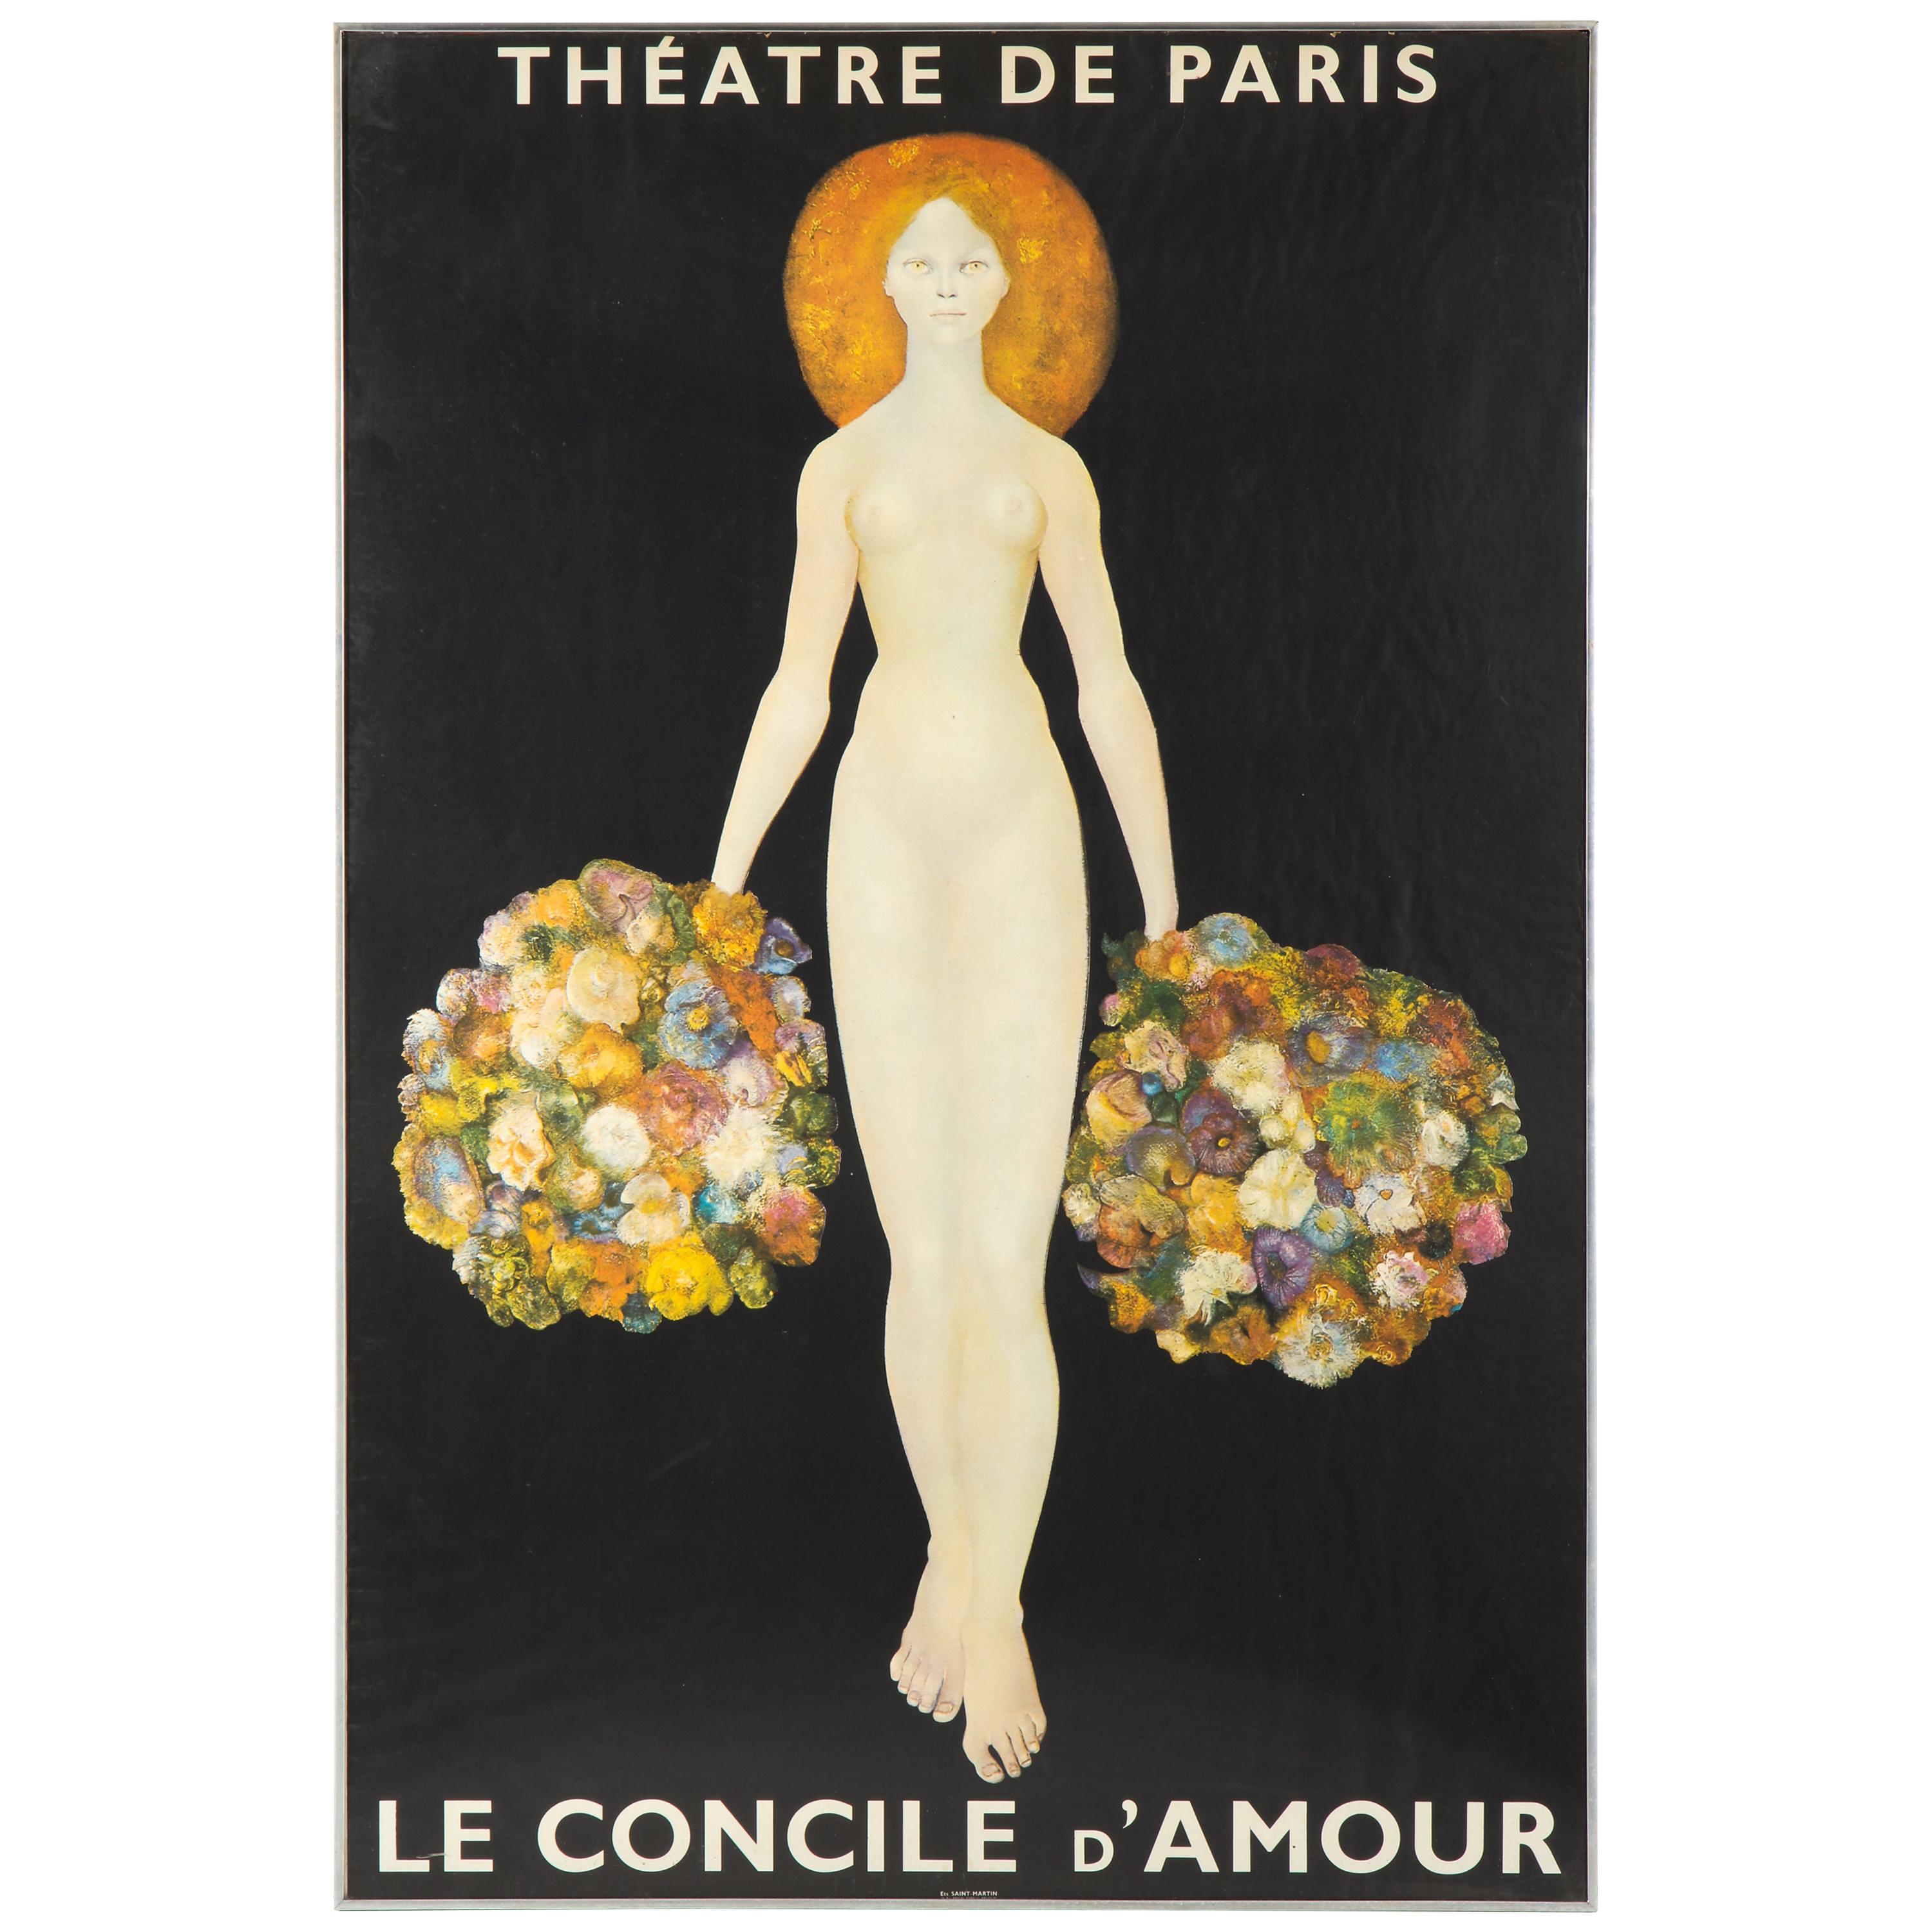 Poster for Theatre De Paris / Le Concile d'Amour after Leonor Fini